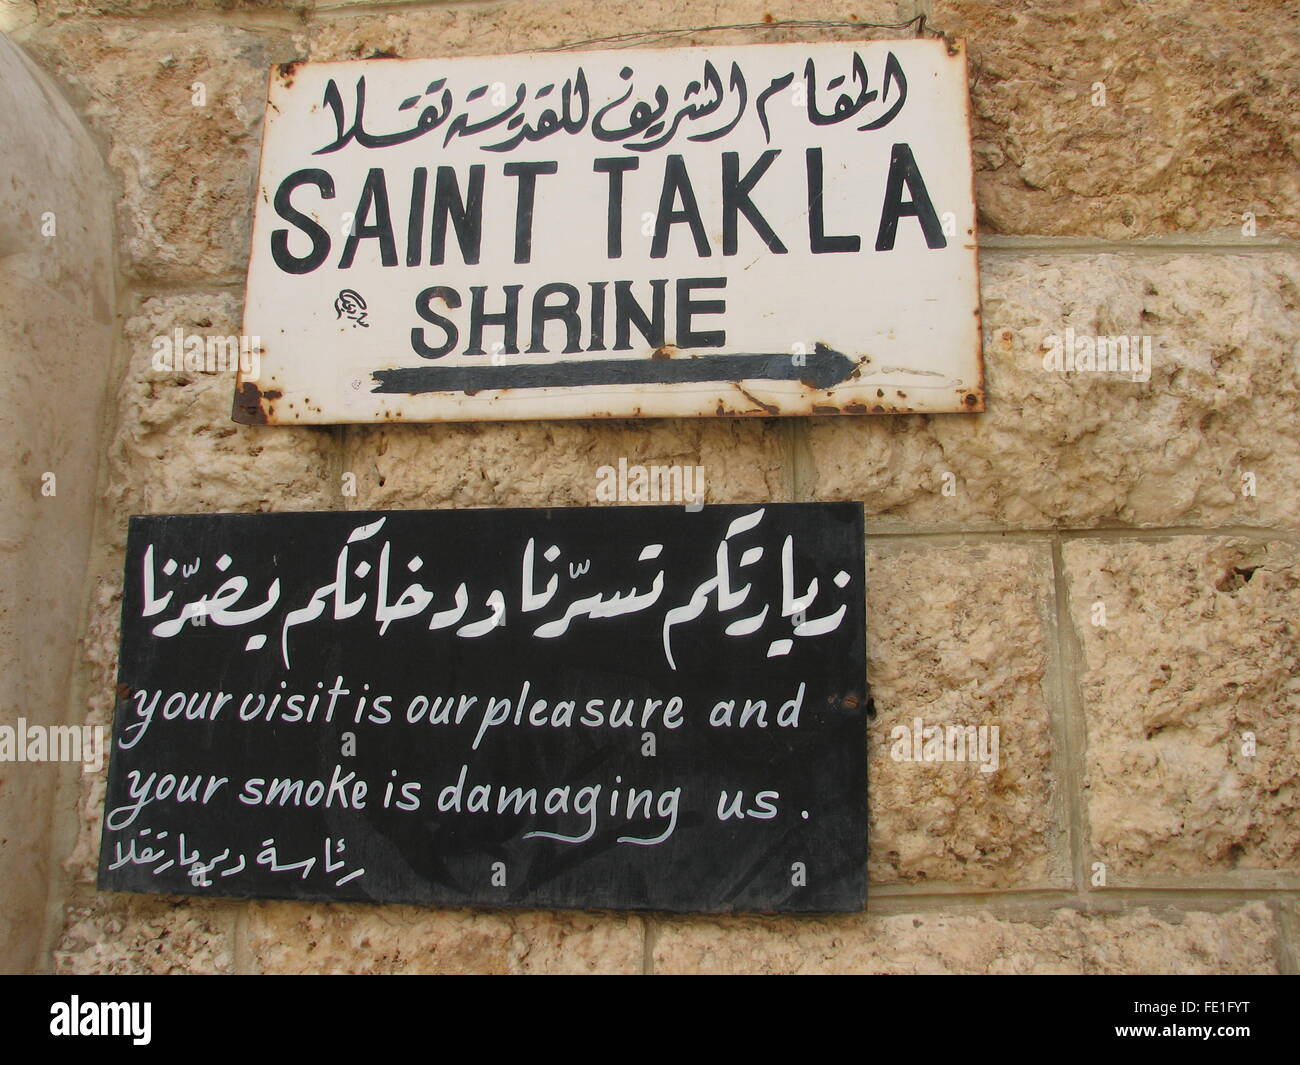 Arabic No Smoking sign with English translation at Shrine of Saint Tekla, Damascus, Syria Stock Photo